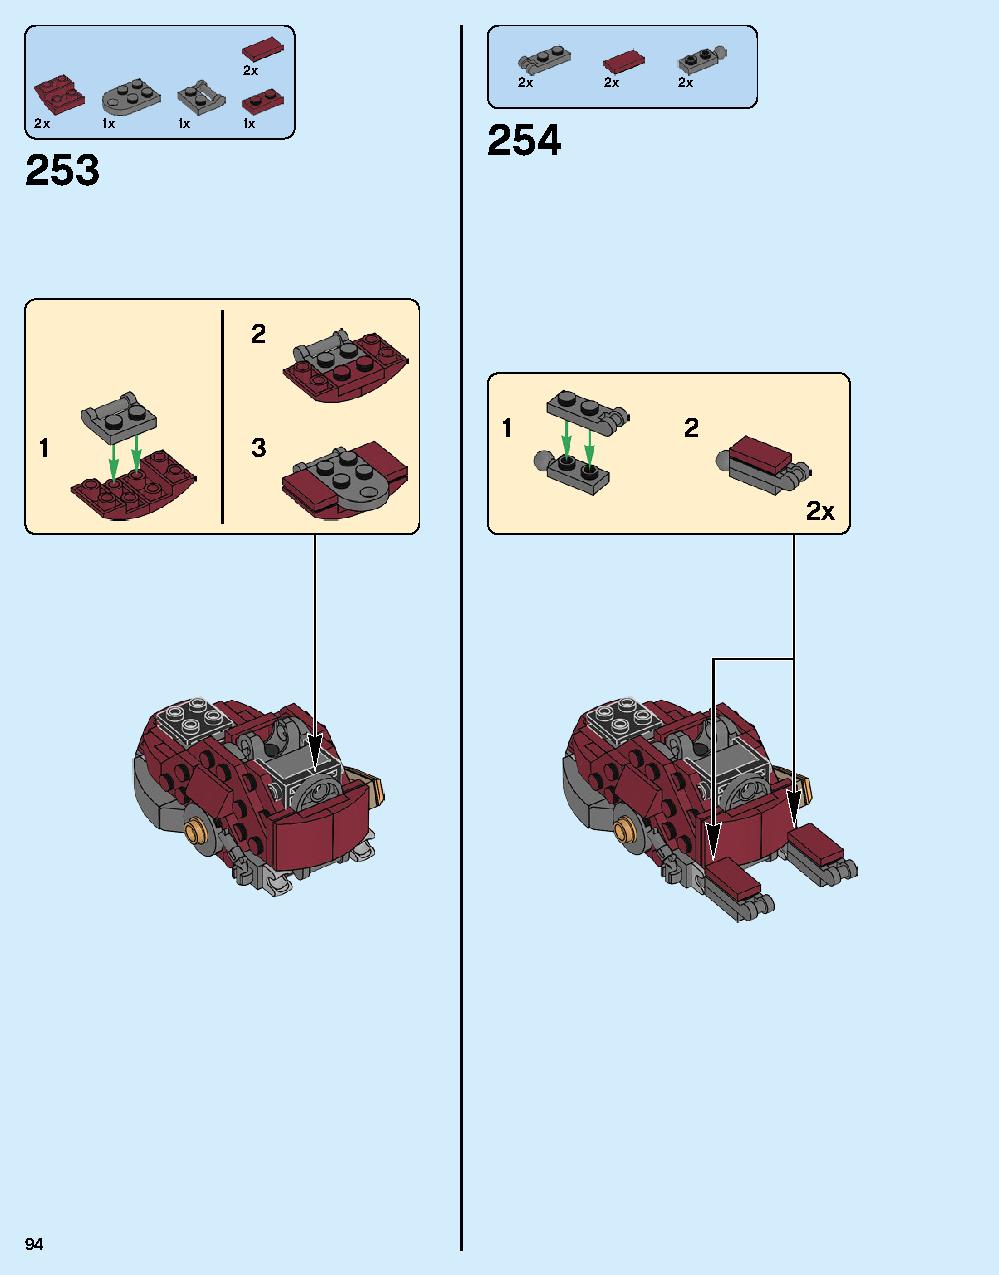 어벤져스 헐크버스터: 울트론 에디션 76105 레고 세트 제품정보 레고 조립설명서 94 page